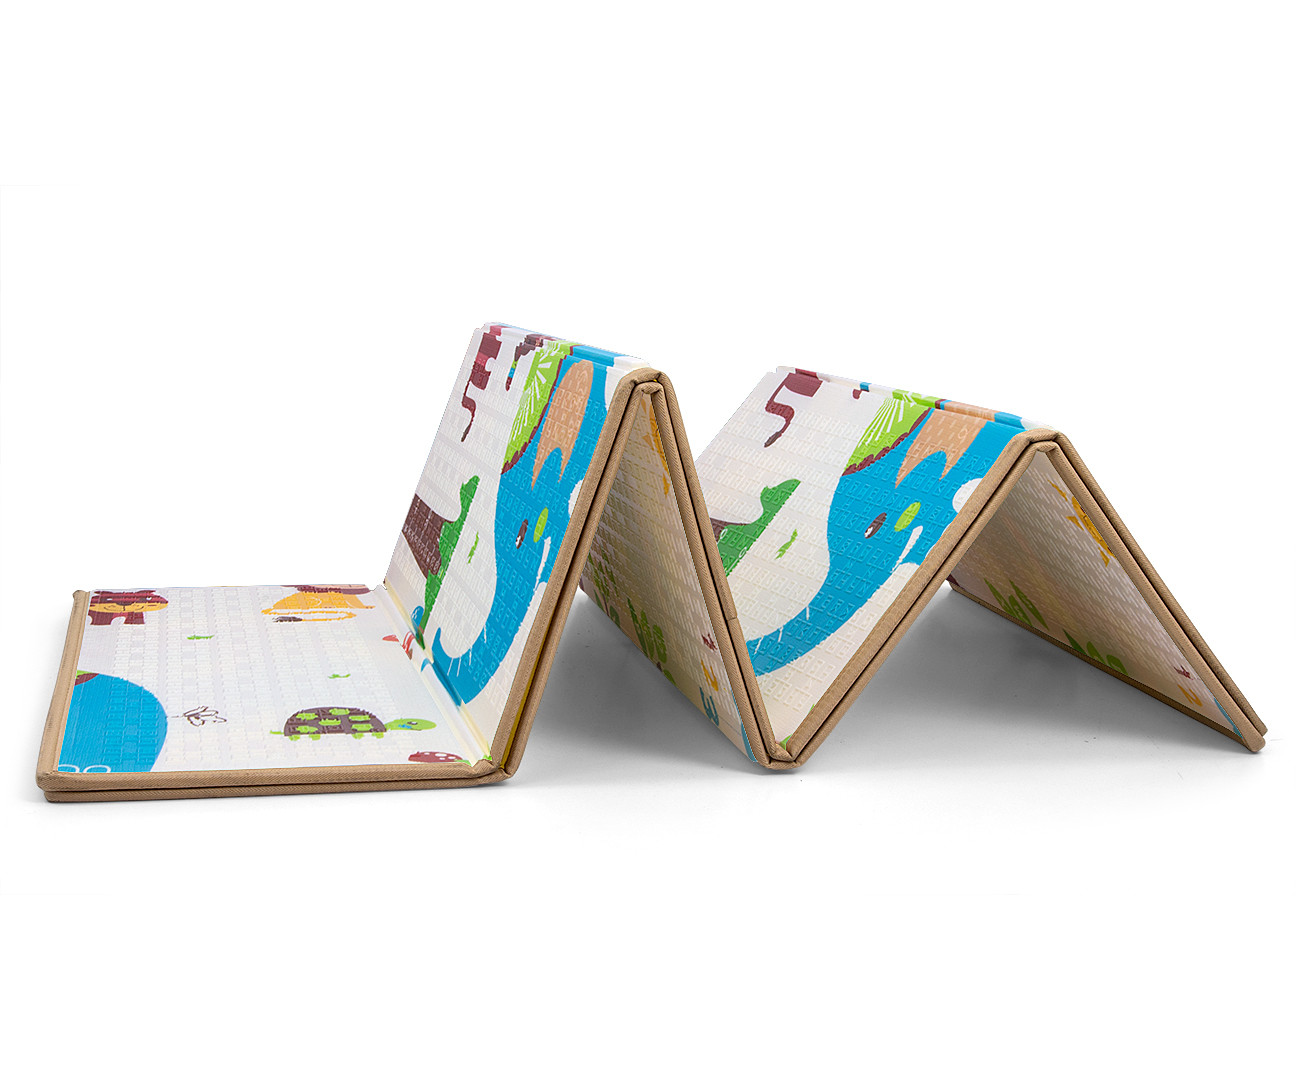 Hrací podložka pro děti MILLY MALLY 197x177 cm - Safari